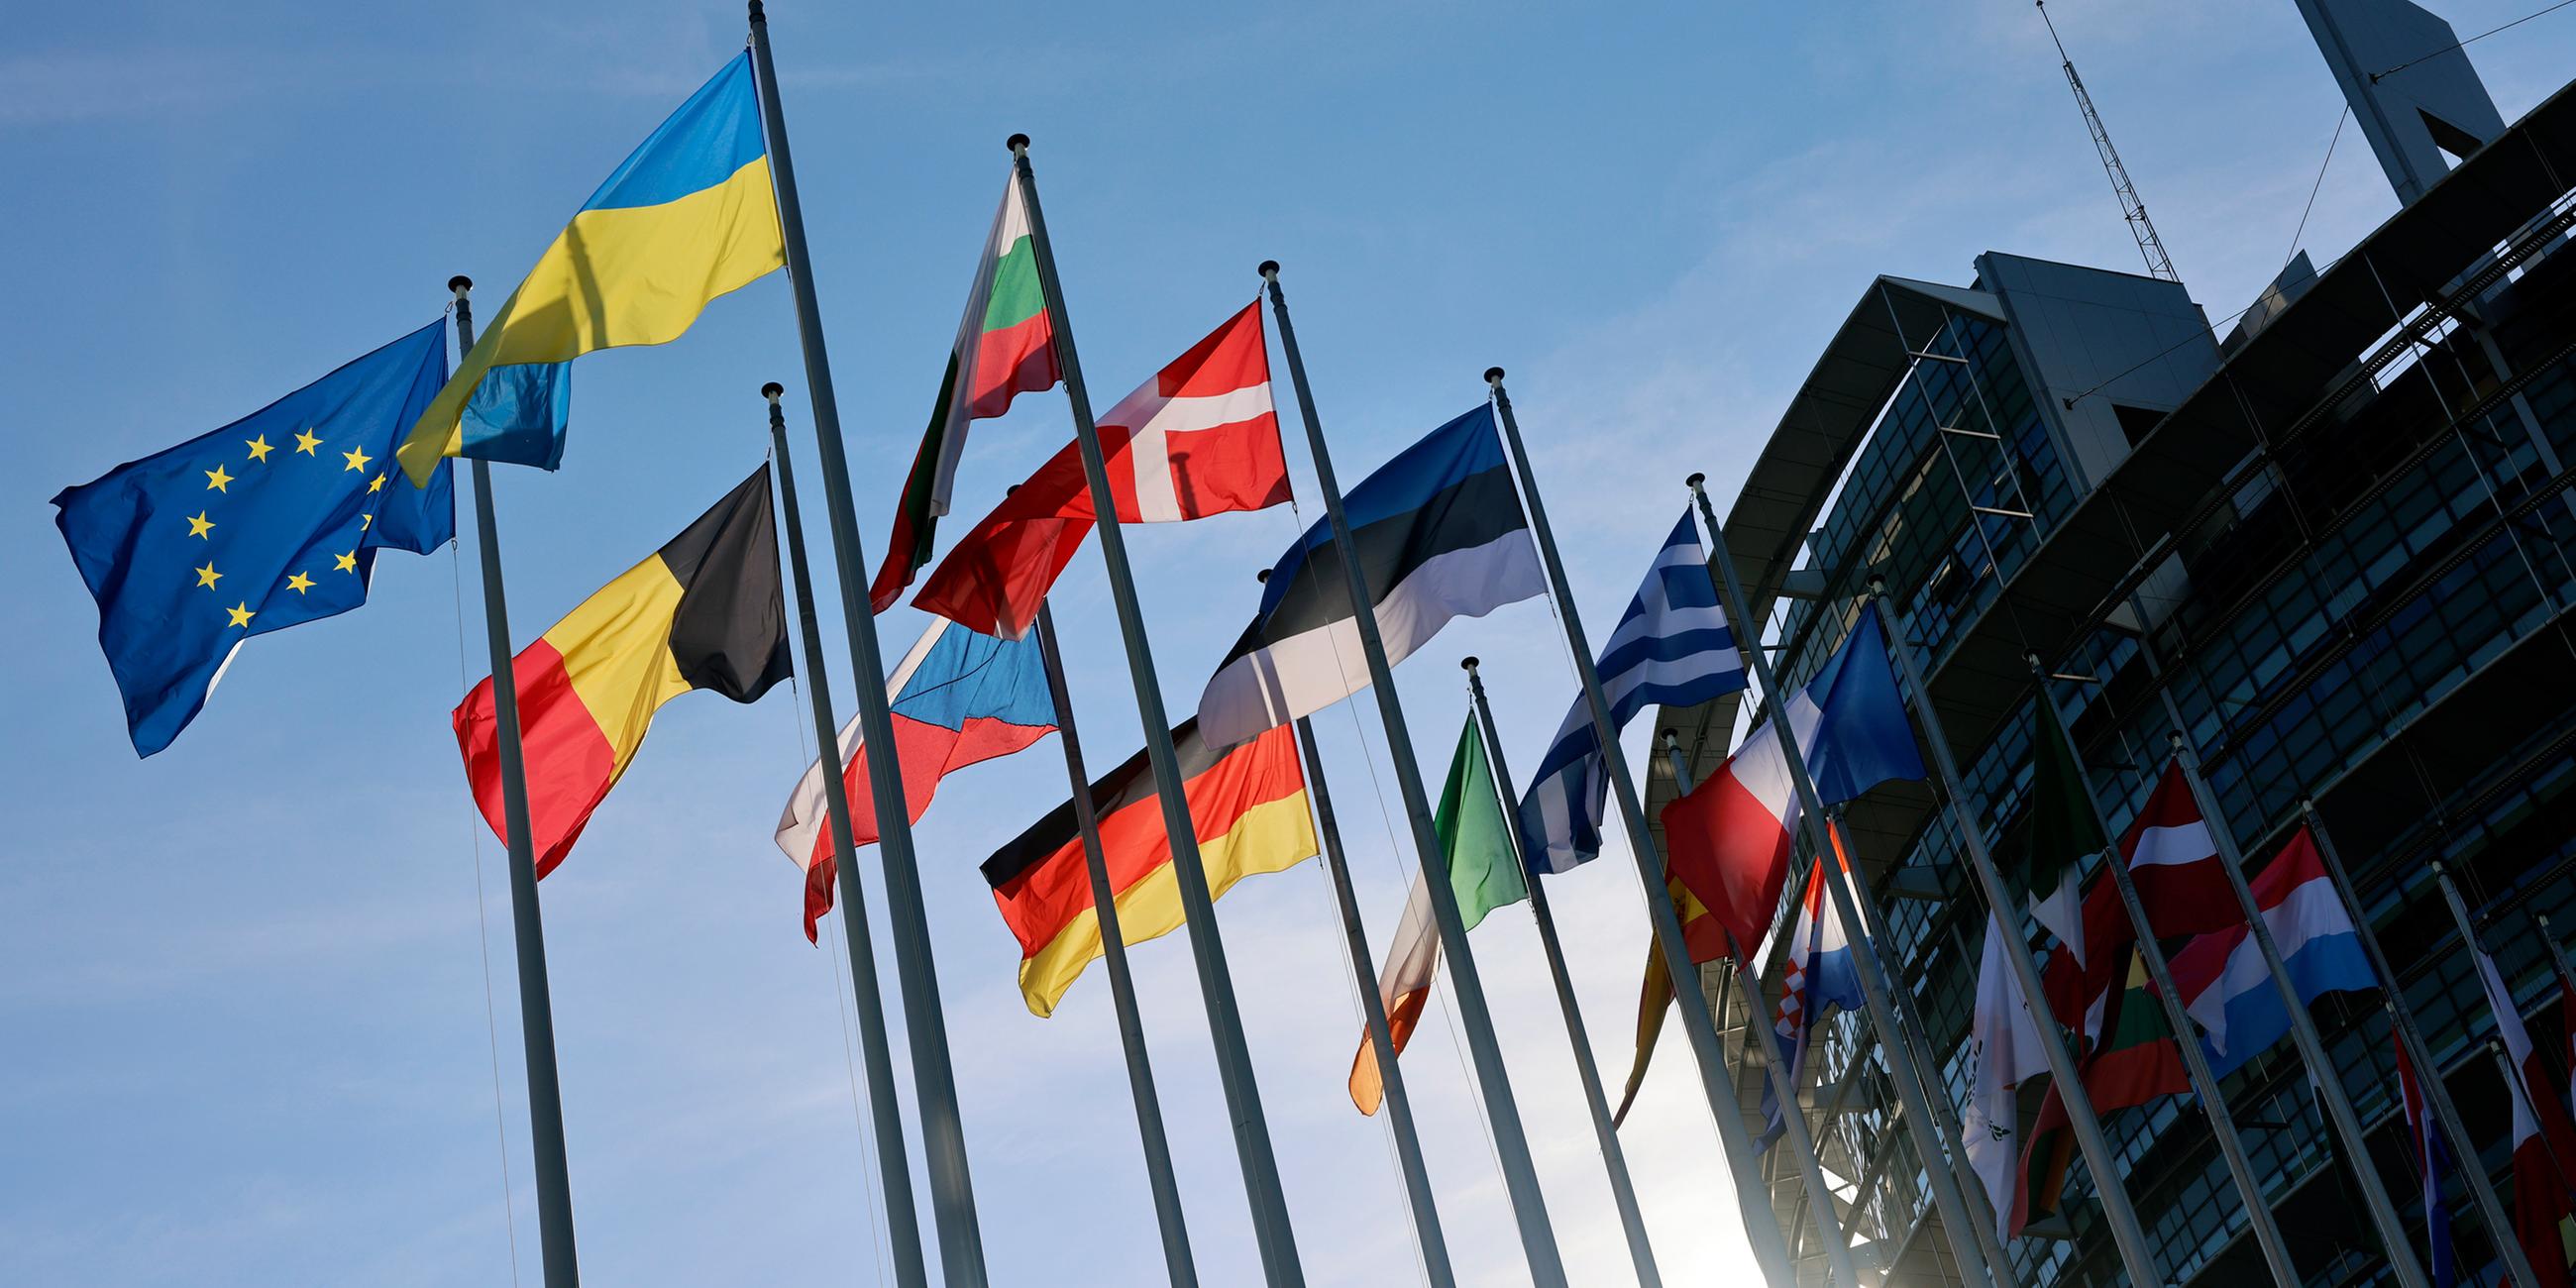 EU-Parlament in Straßburg: Flaggen von EU-Staaten wehen im Wind. (Symbolbild)